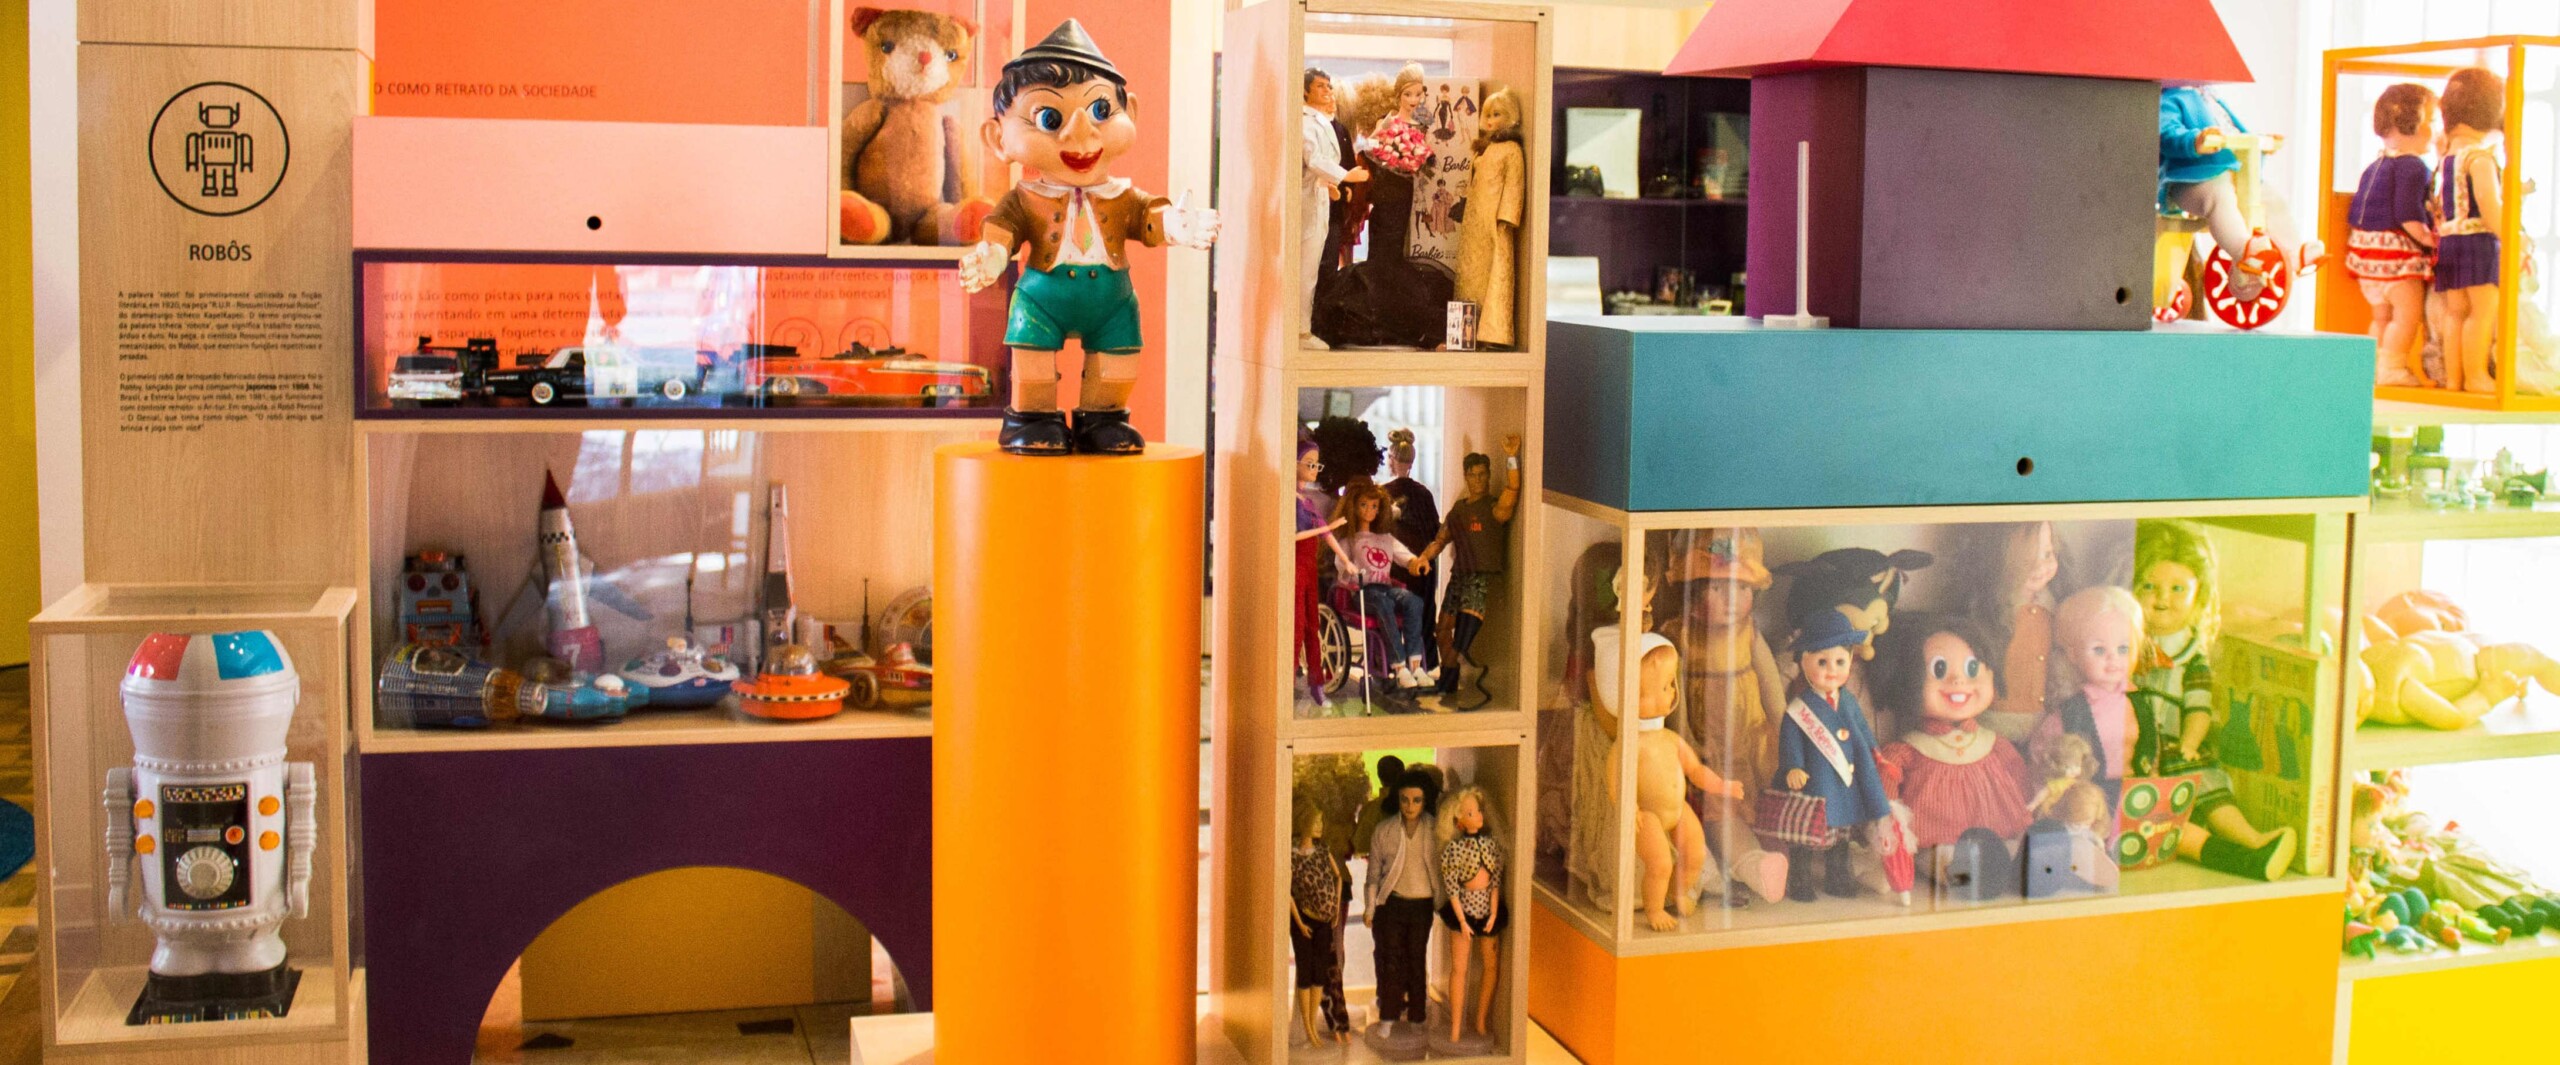 Aonde ir com crianças em Belo Horizonte | Atividade lúdica no Museu dos brinquedos | Conexão123